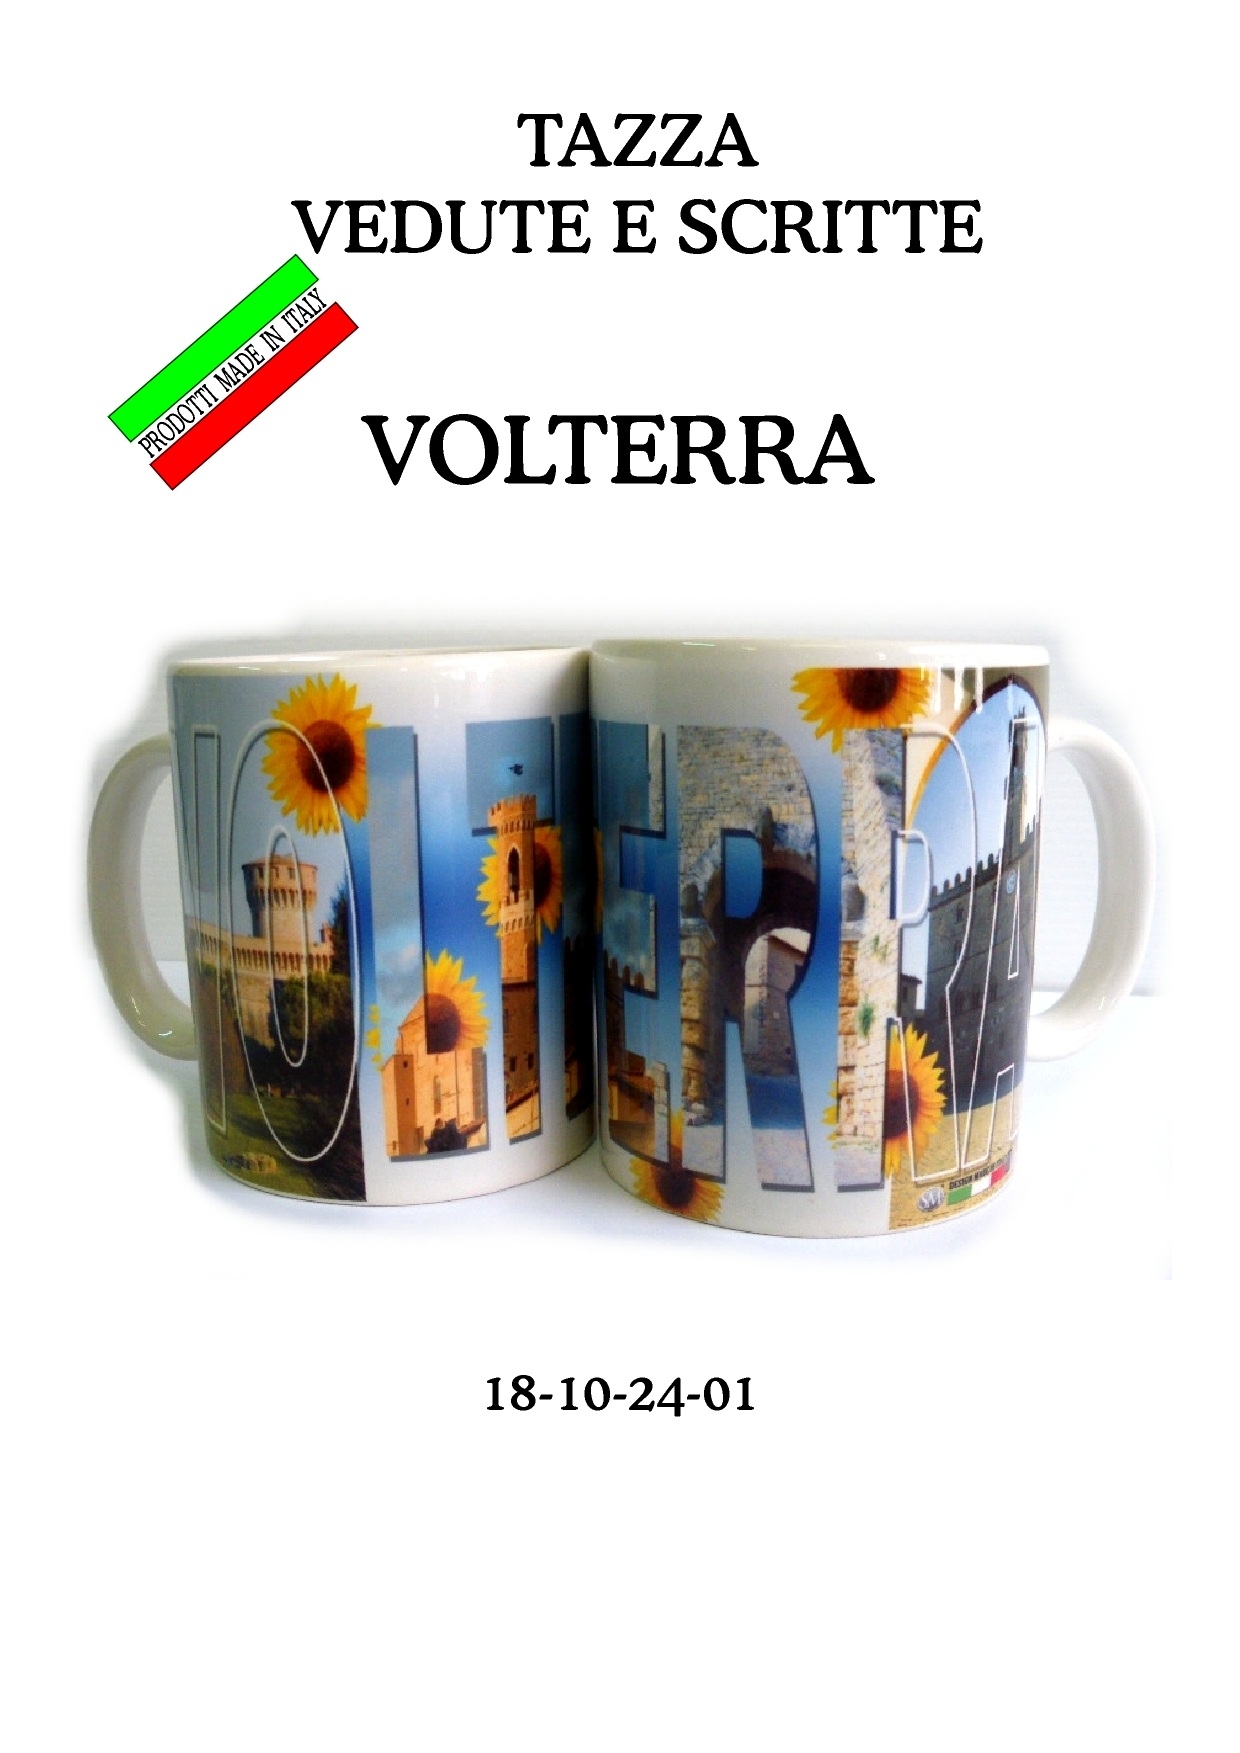 18-10-24-0001 Tazze Volterra Vedute e Scritte CONFEZIONI da n. 1 Pz.